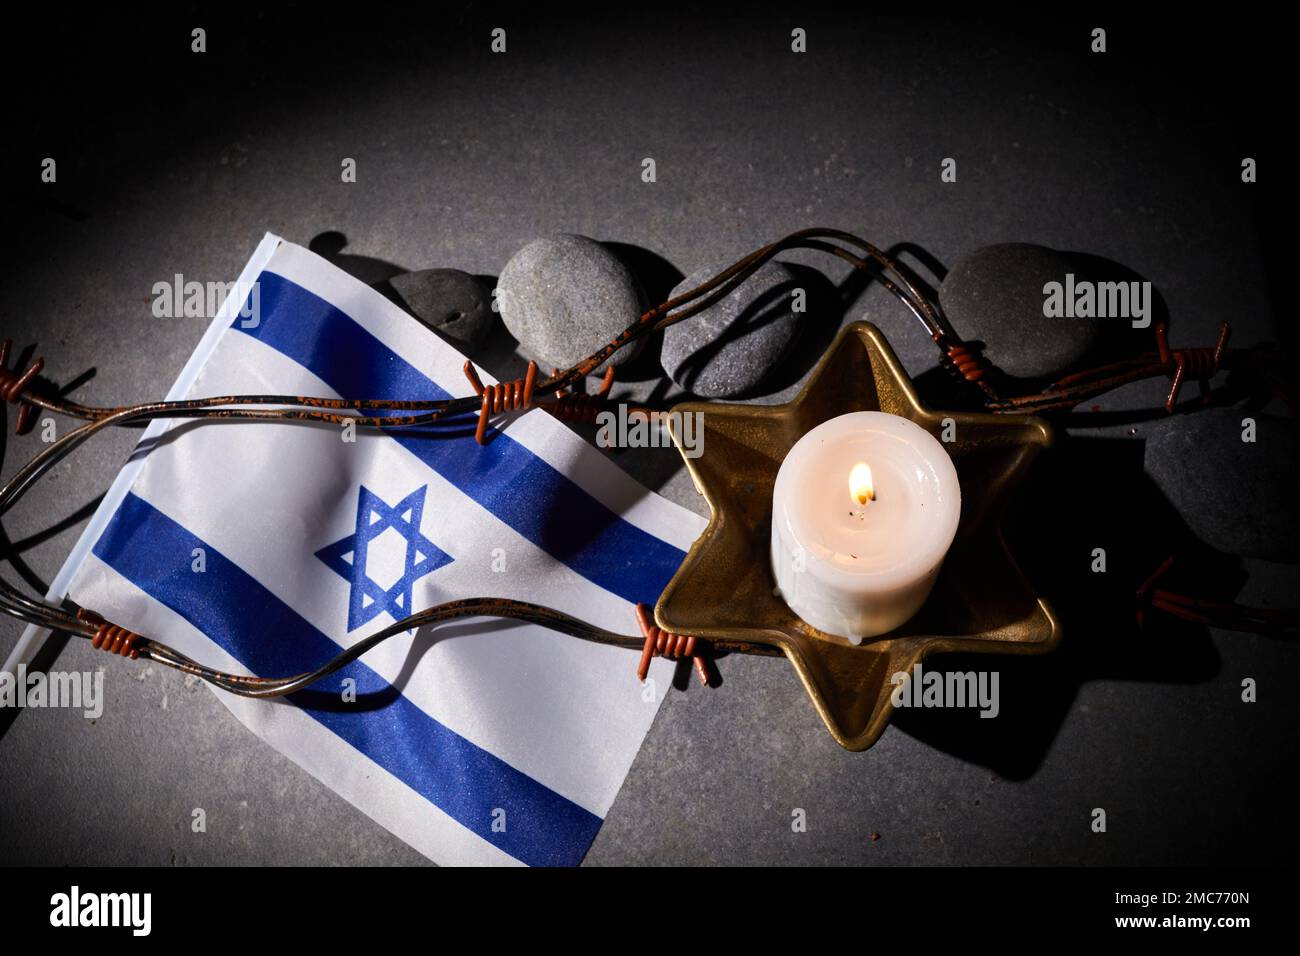 Brennende Kerze, Stacheldraht, Flagge Israels auf dunklem Hintergrund. Holocaust-Gedächtnisfeiertag Stockfoto